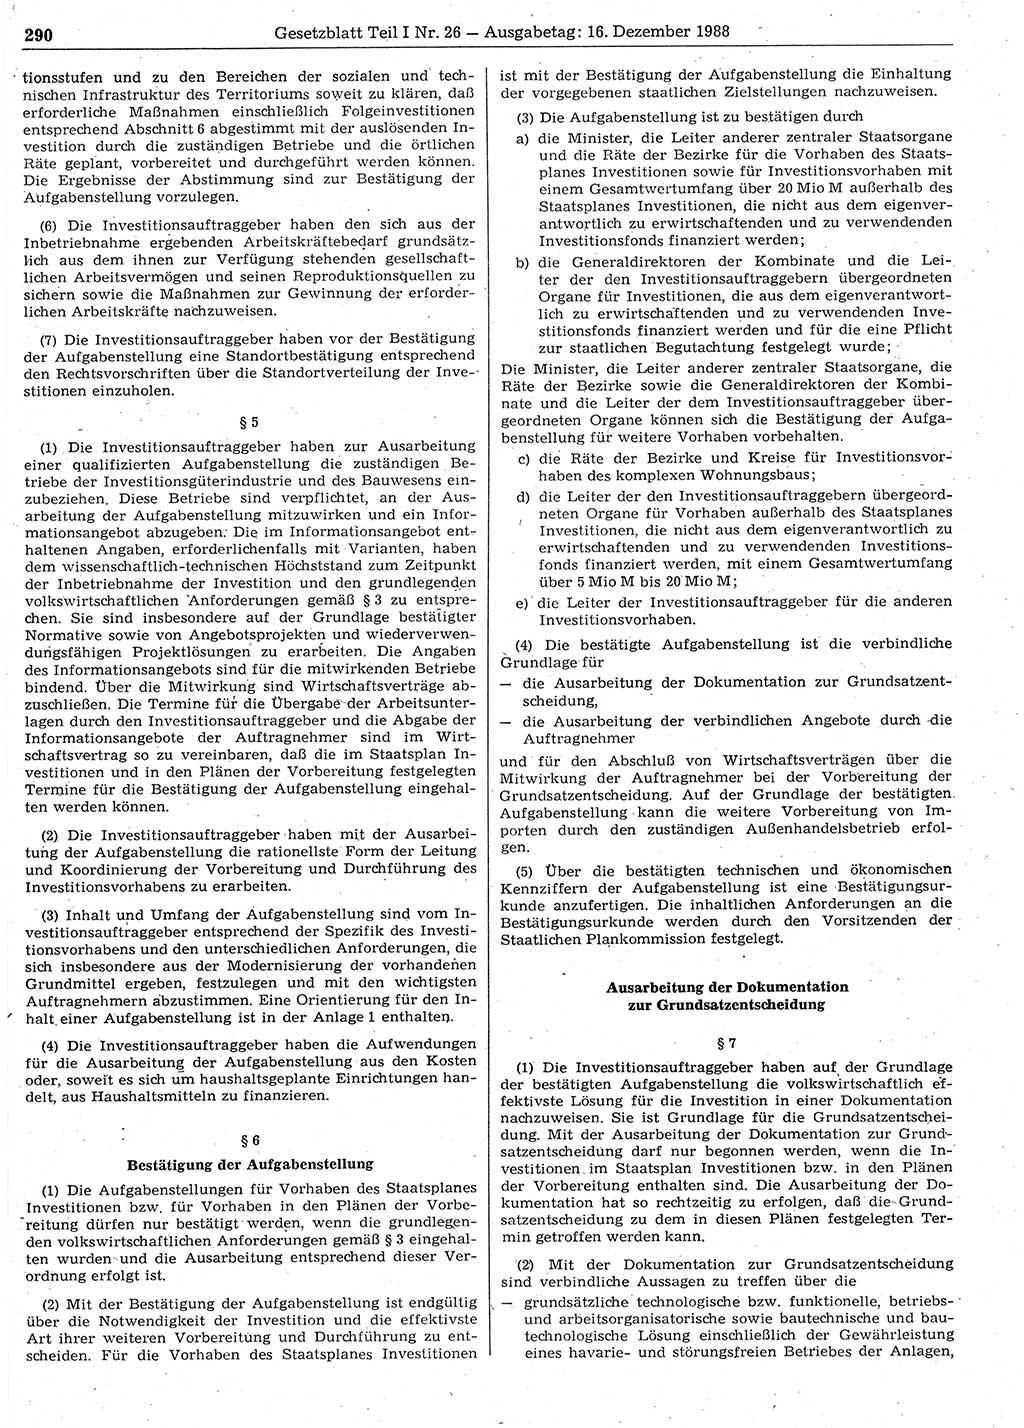 Gesetzblatt (GBl.) der Deutschen Demokratischen Republik (DDR) Teil Ⅰ 1988, Seite 290 (GBl. DDR Ⅰ 1988, S. 290)